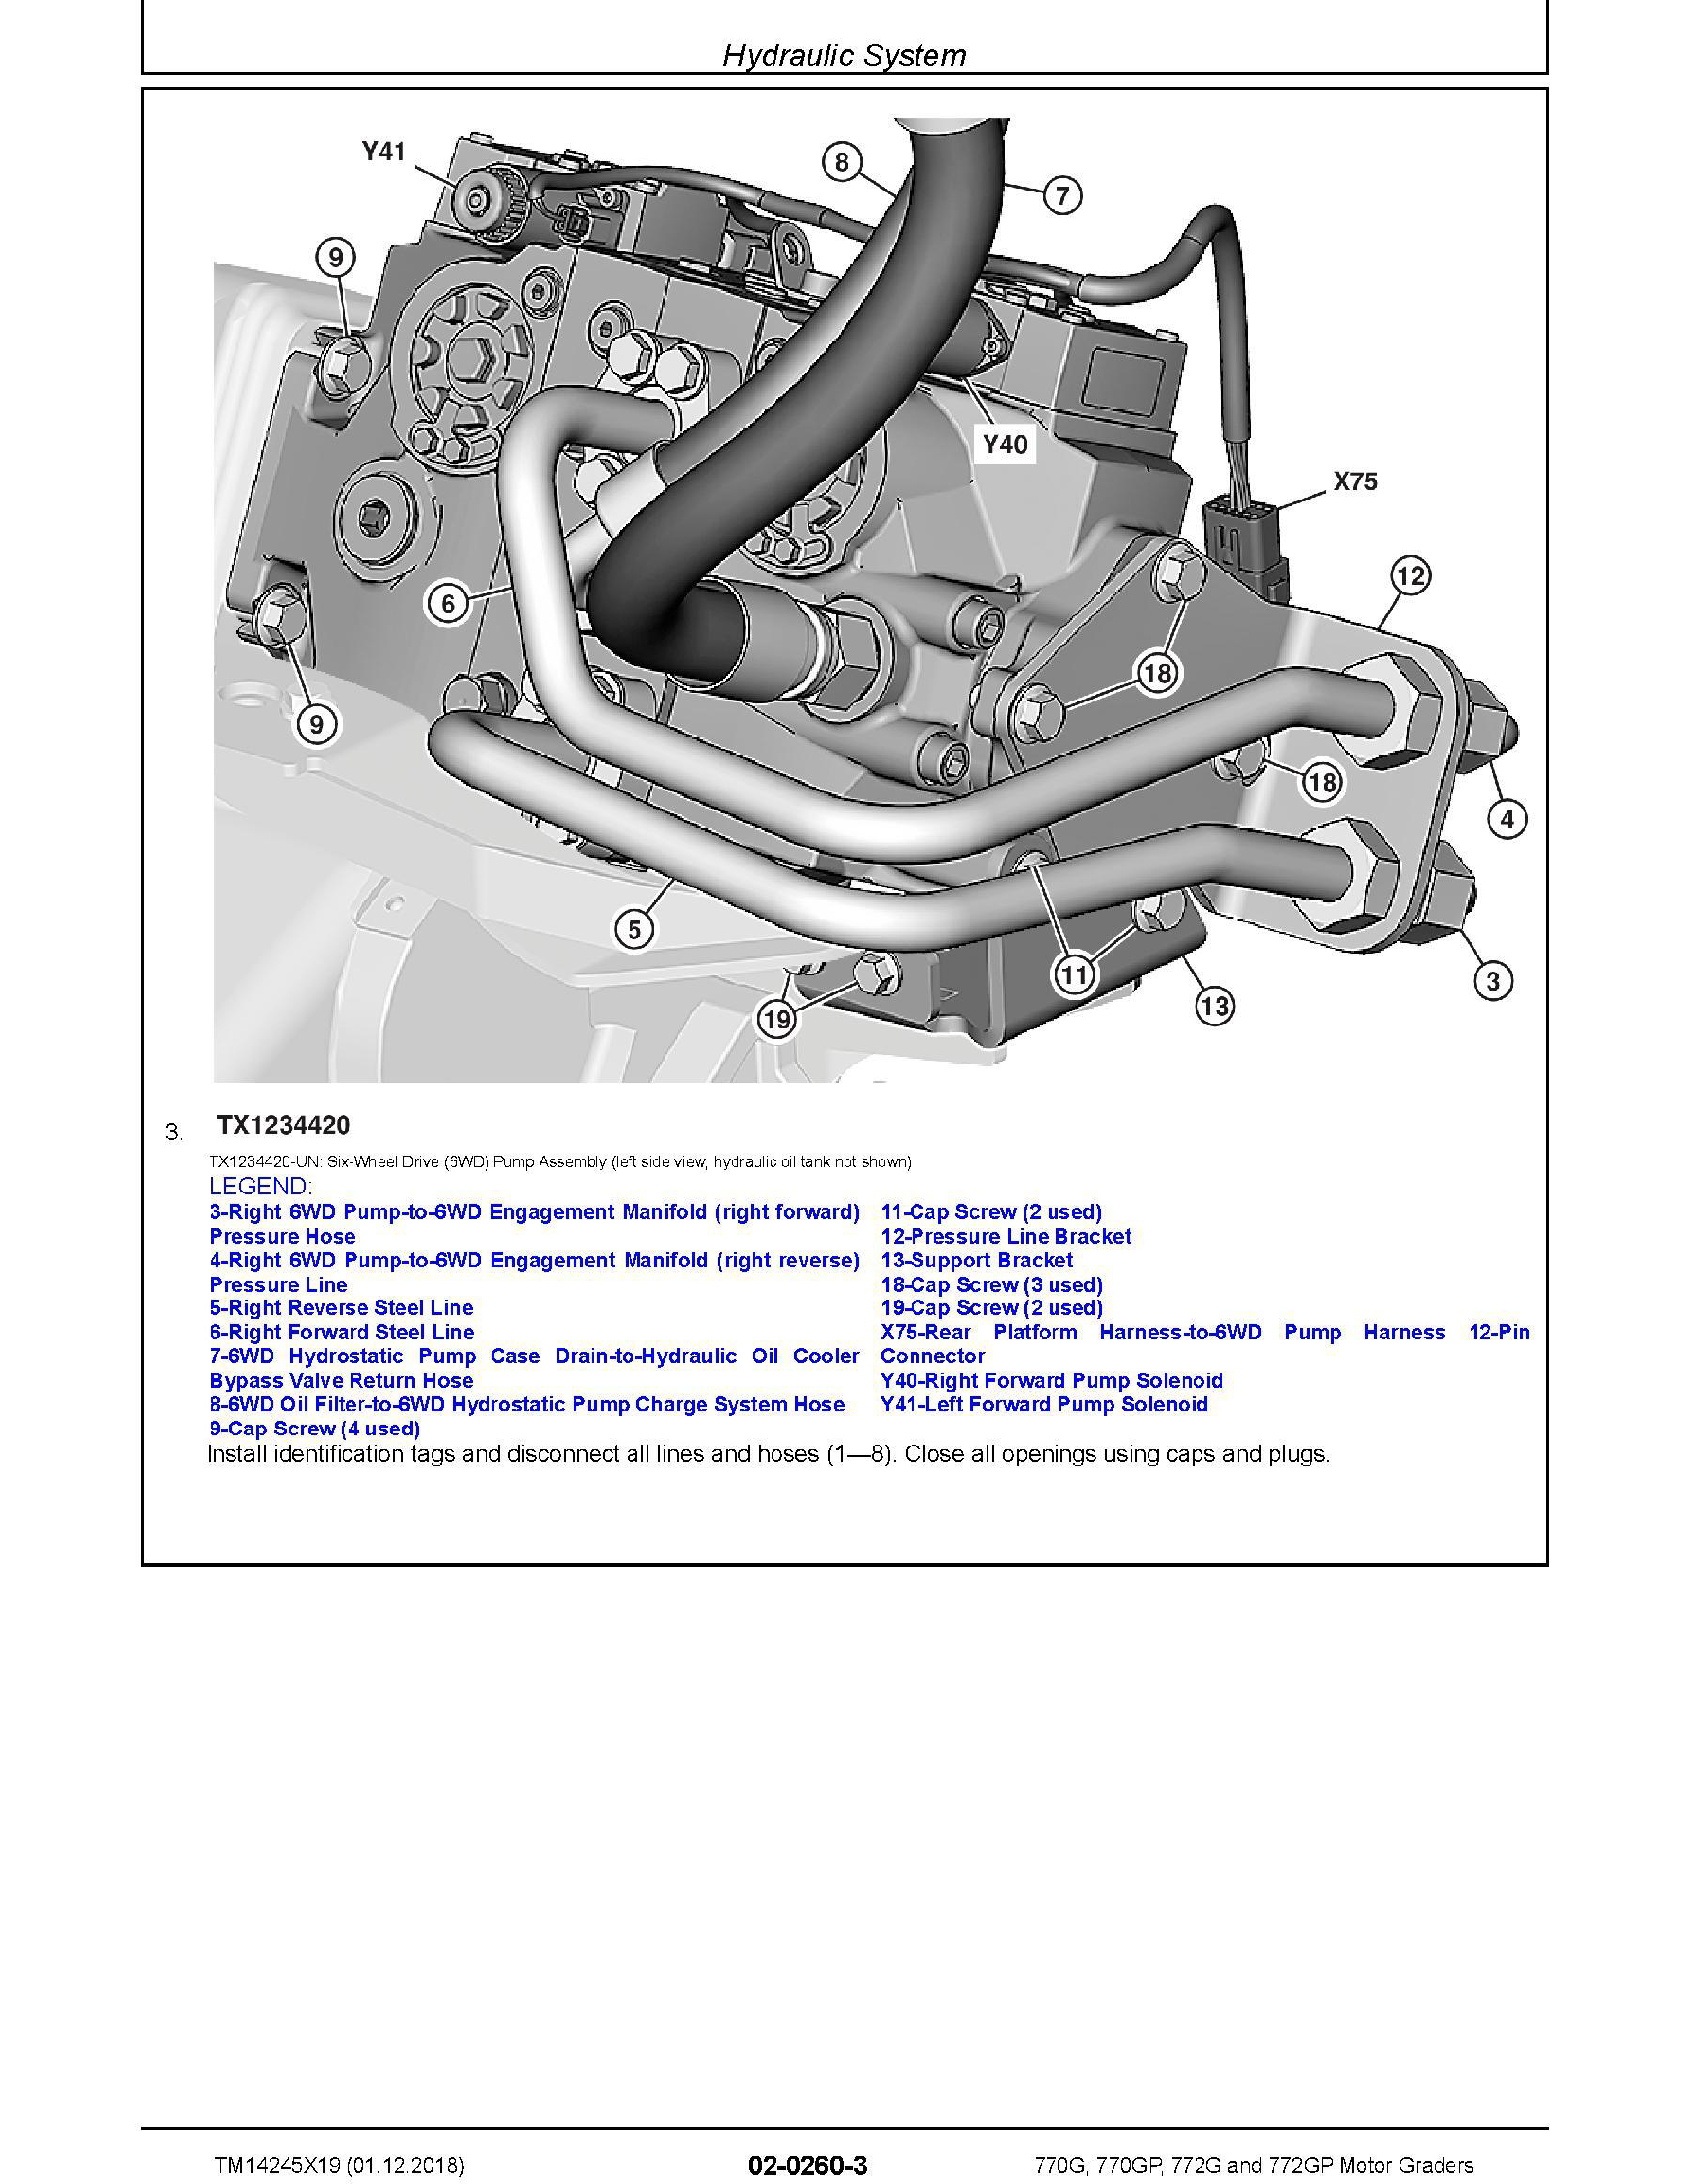 John Deere 5500N manual pdf